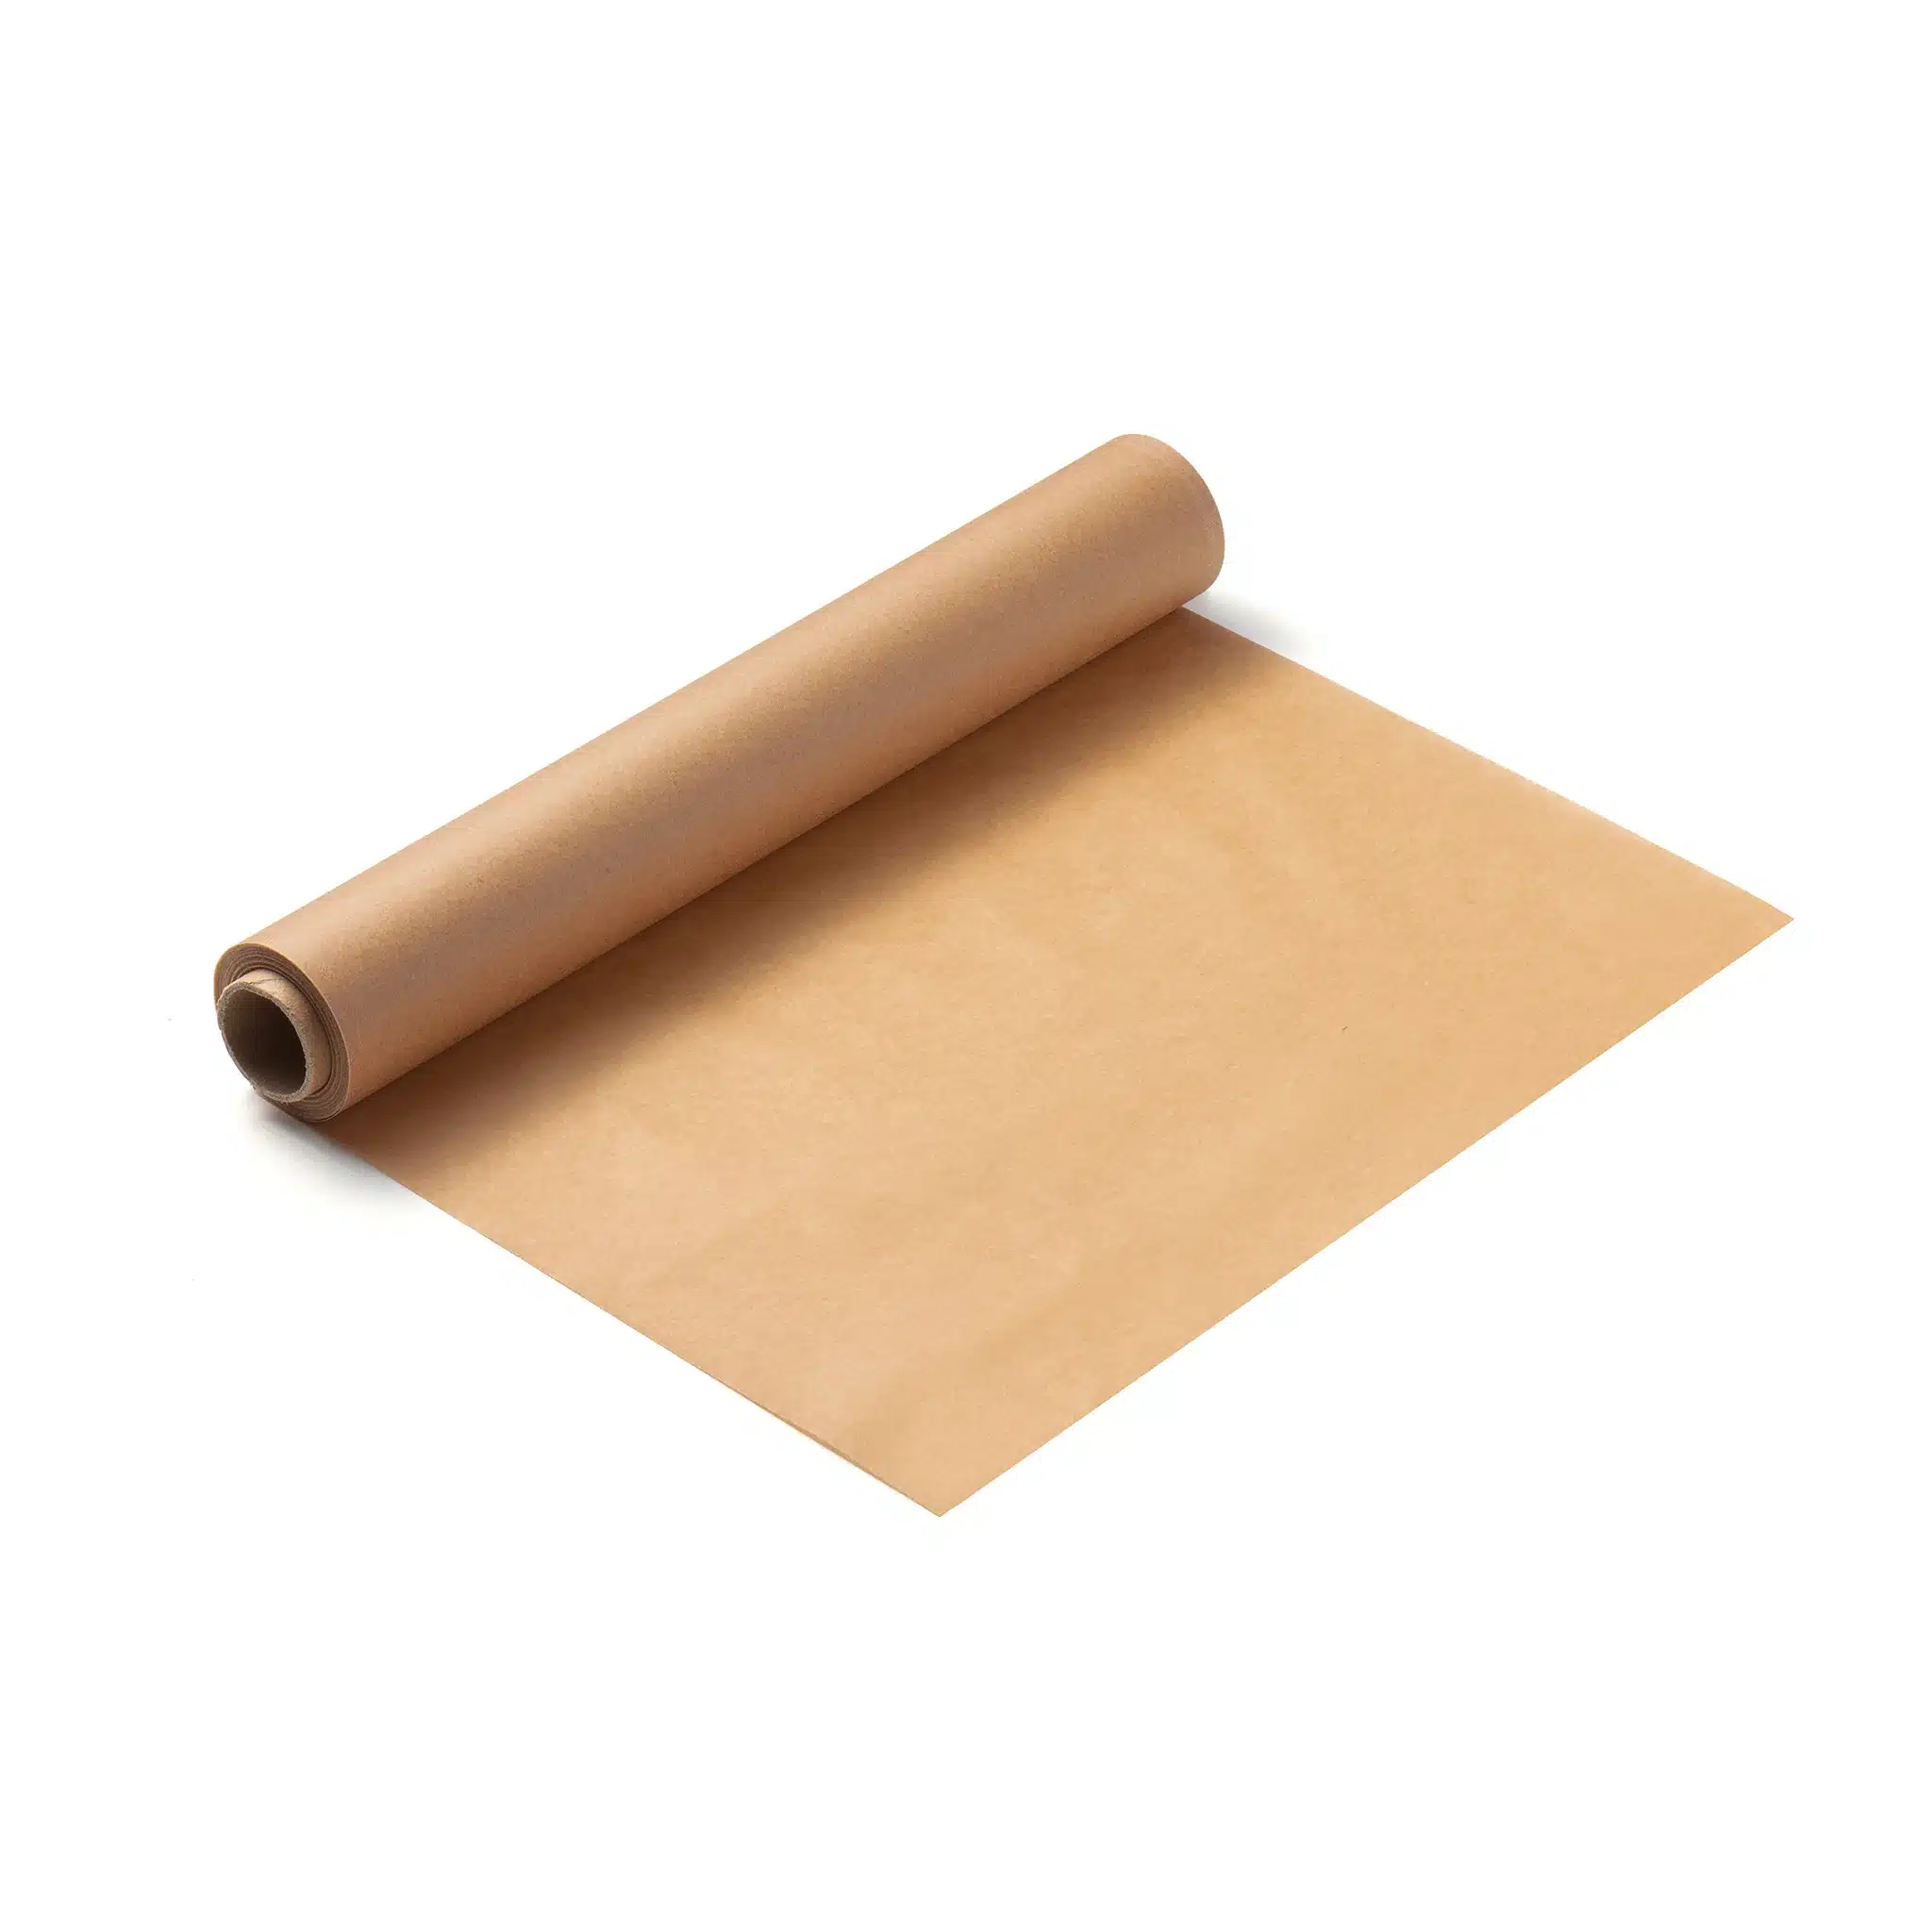 microwaving parchment paper